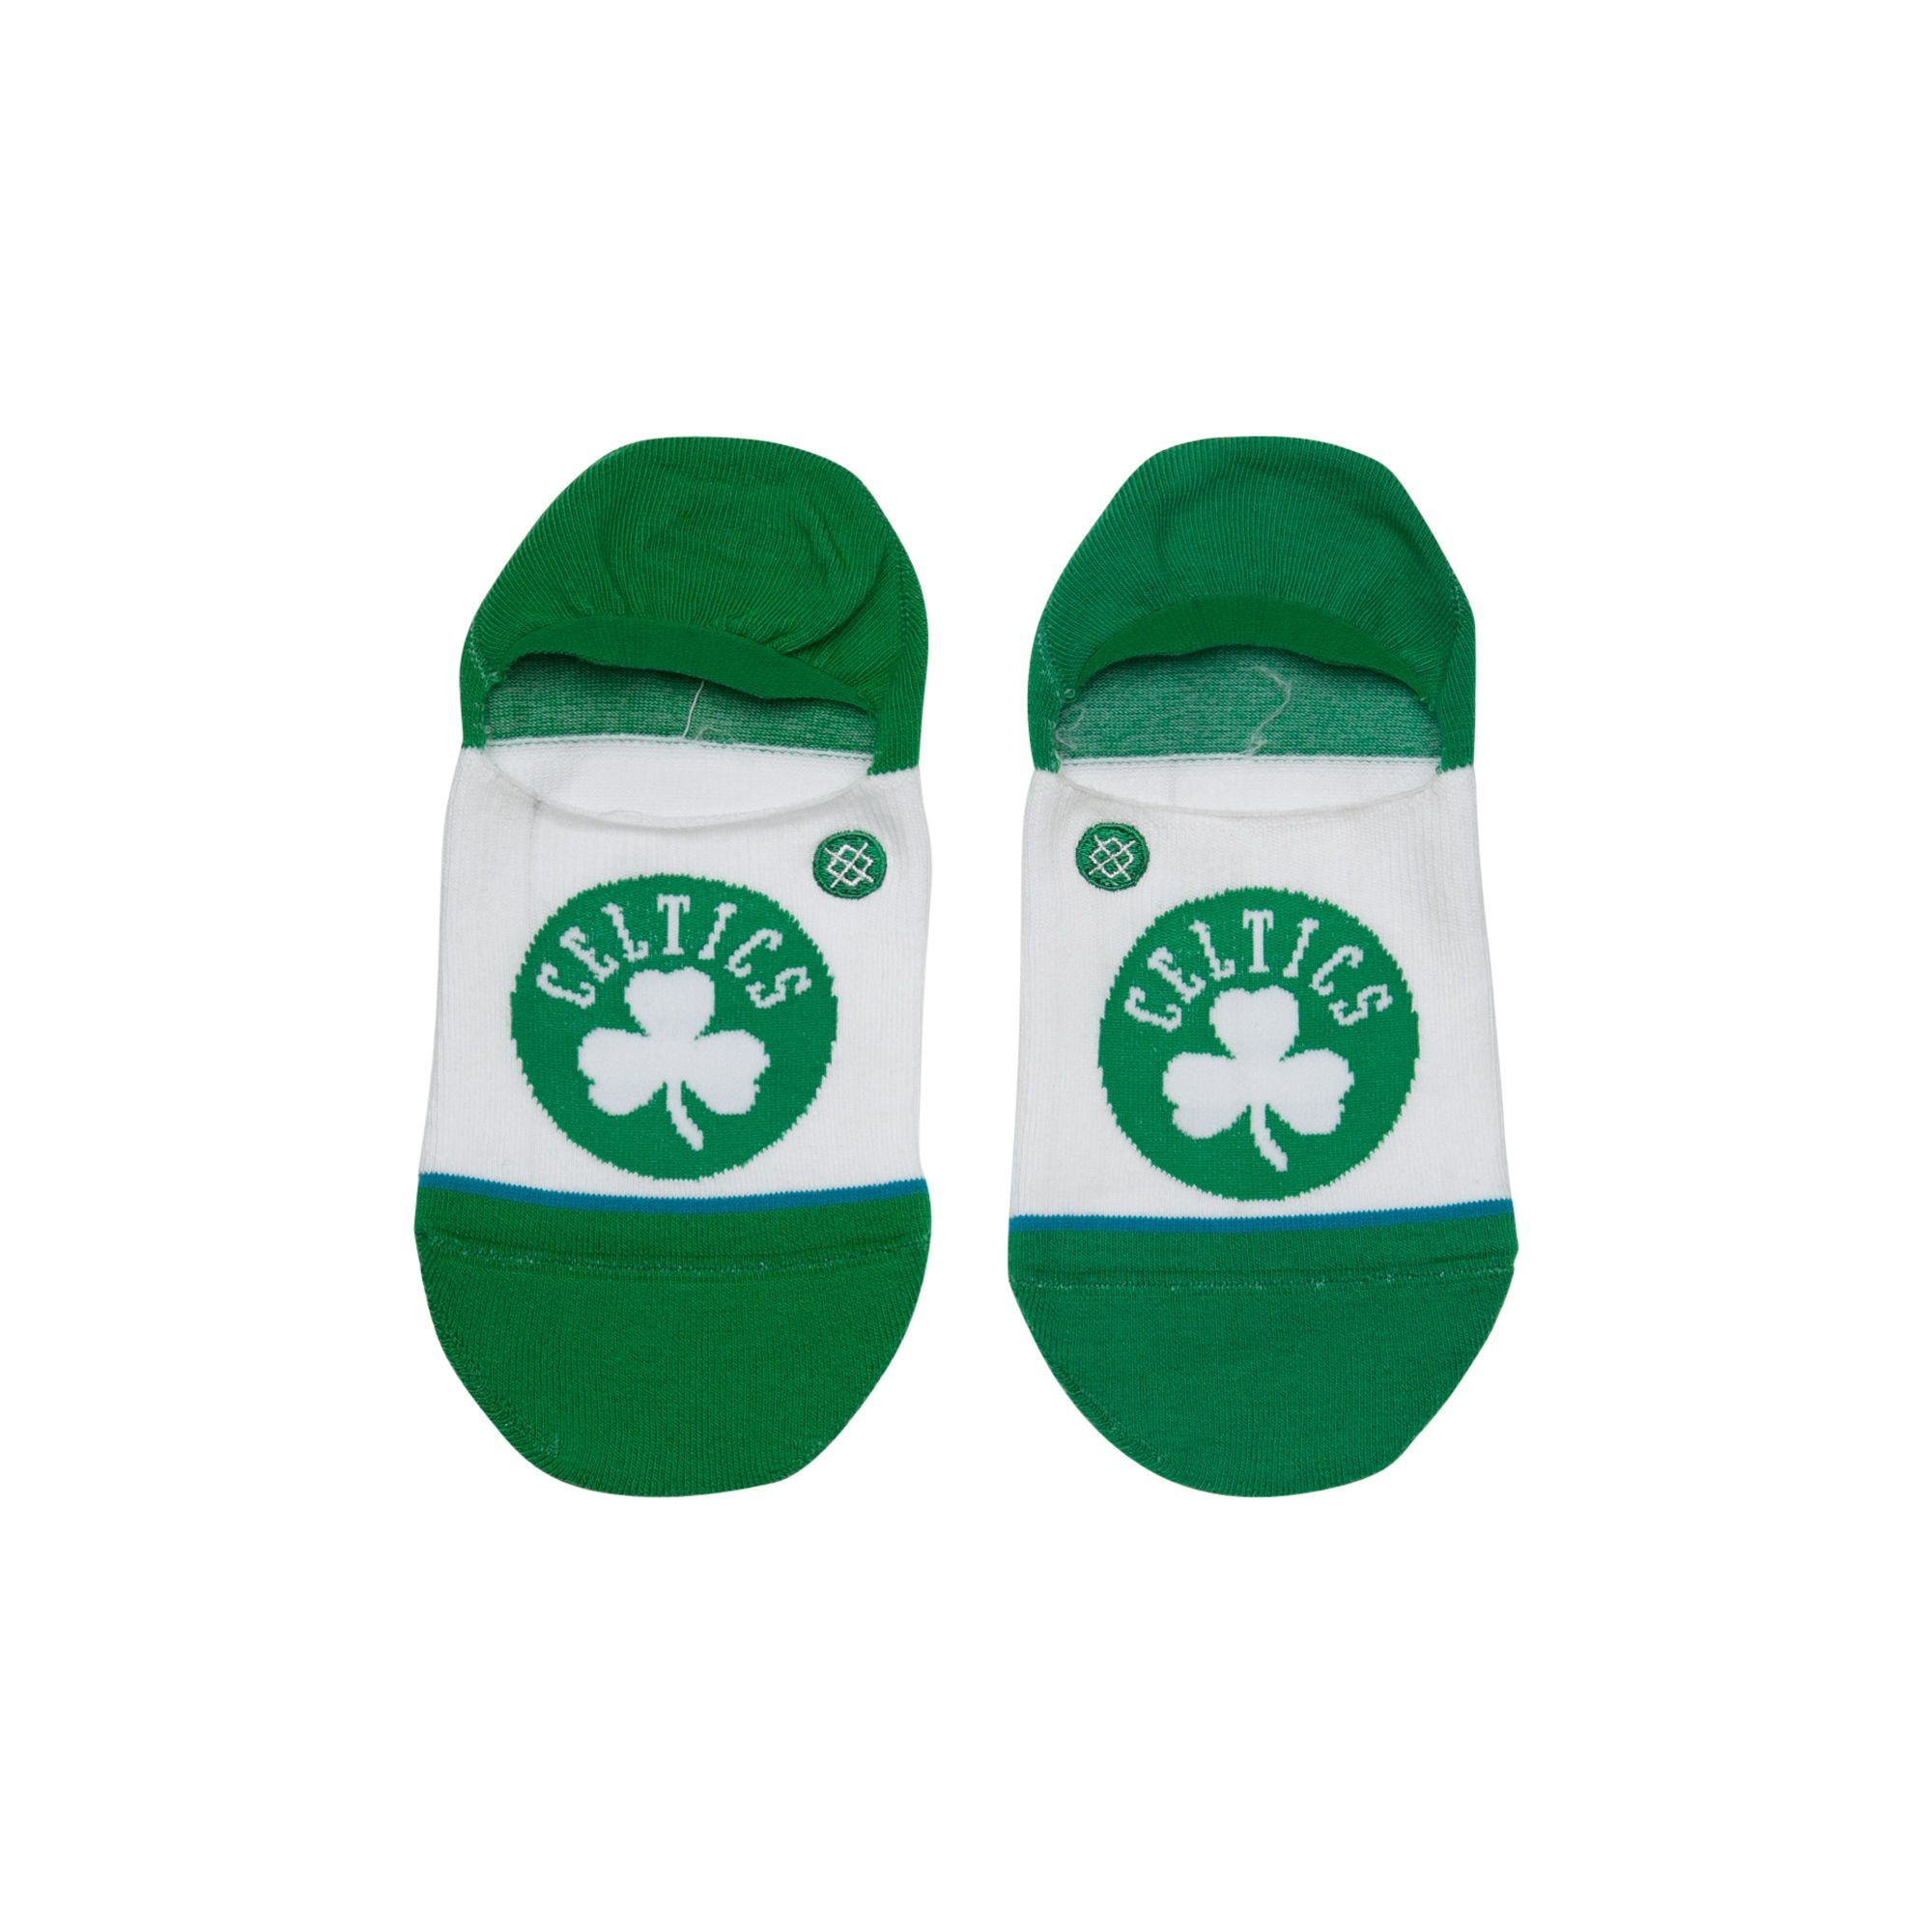 ACCESSORIES - Stance Socks NBA Boston Celtics Invisible Green M115A18CEL-GRN